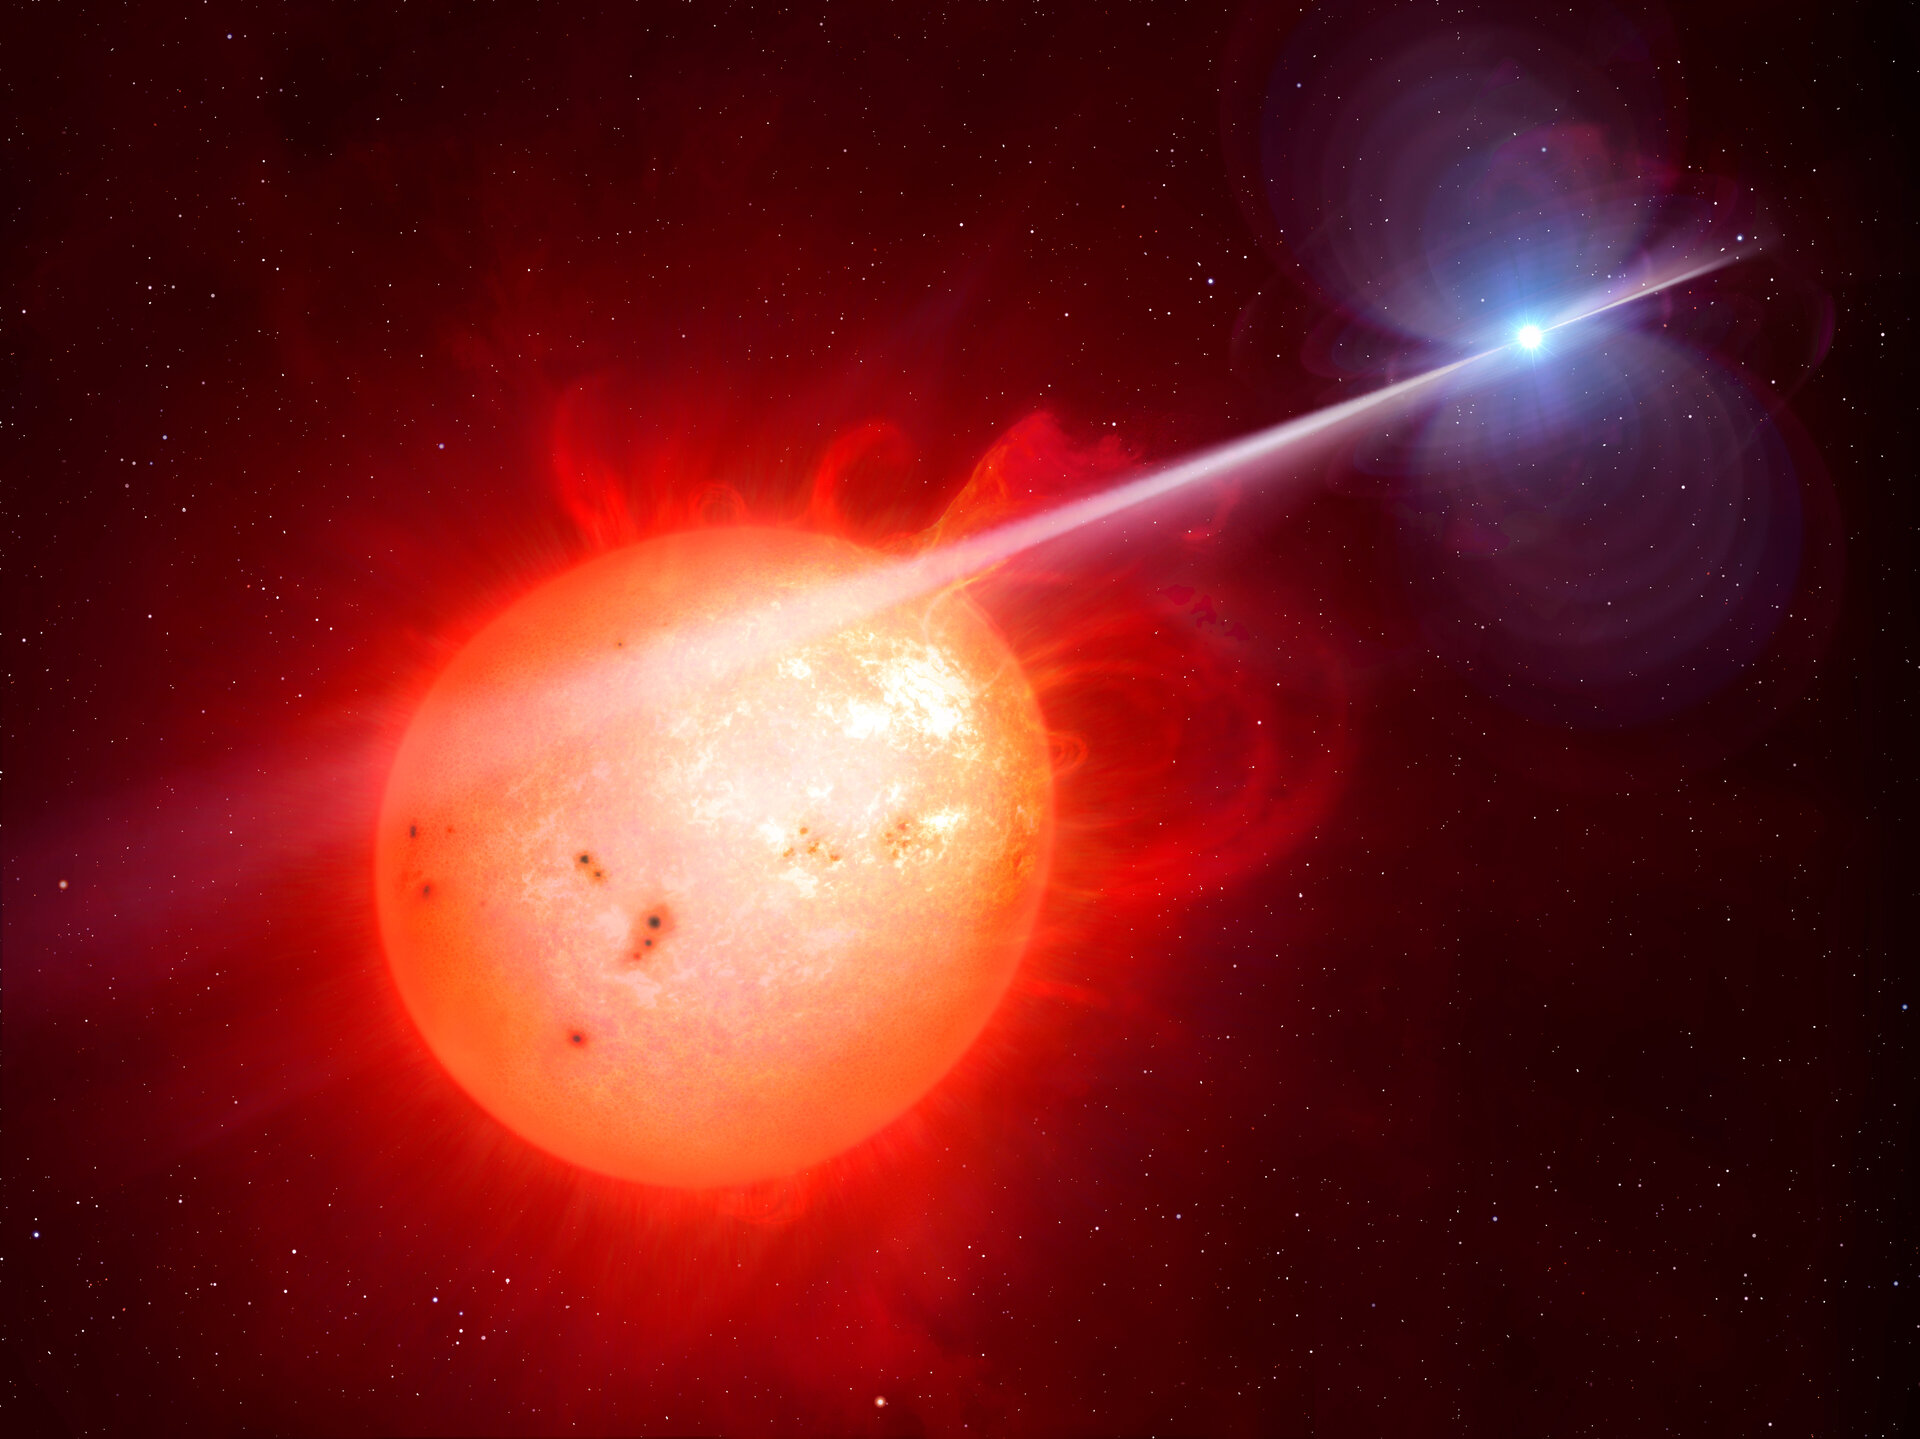 Reproducción simulada del exótico sistema estelar binario AR Scorpii. Créditos: M. Garlick/University of Warwick, ESA/Hubble